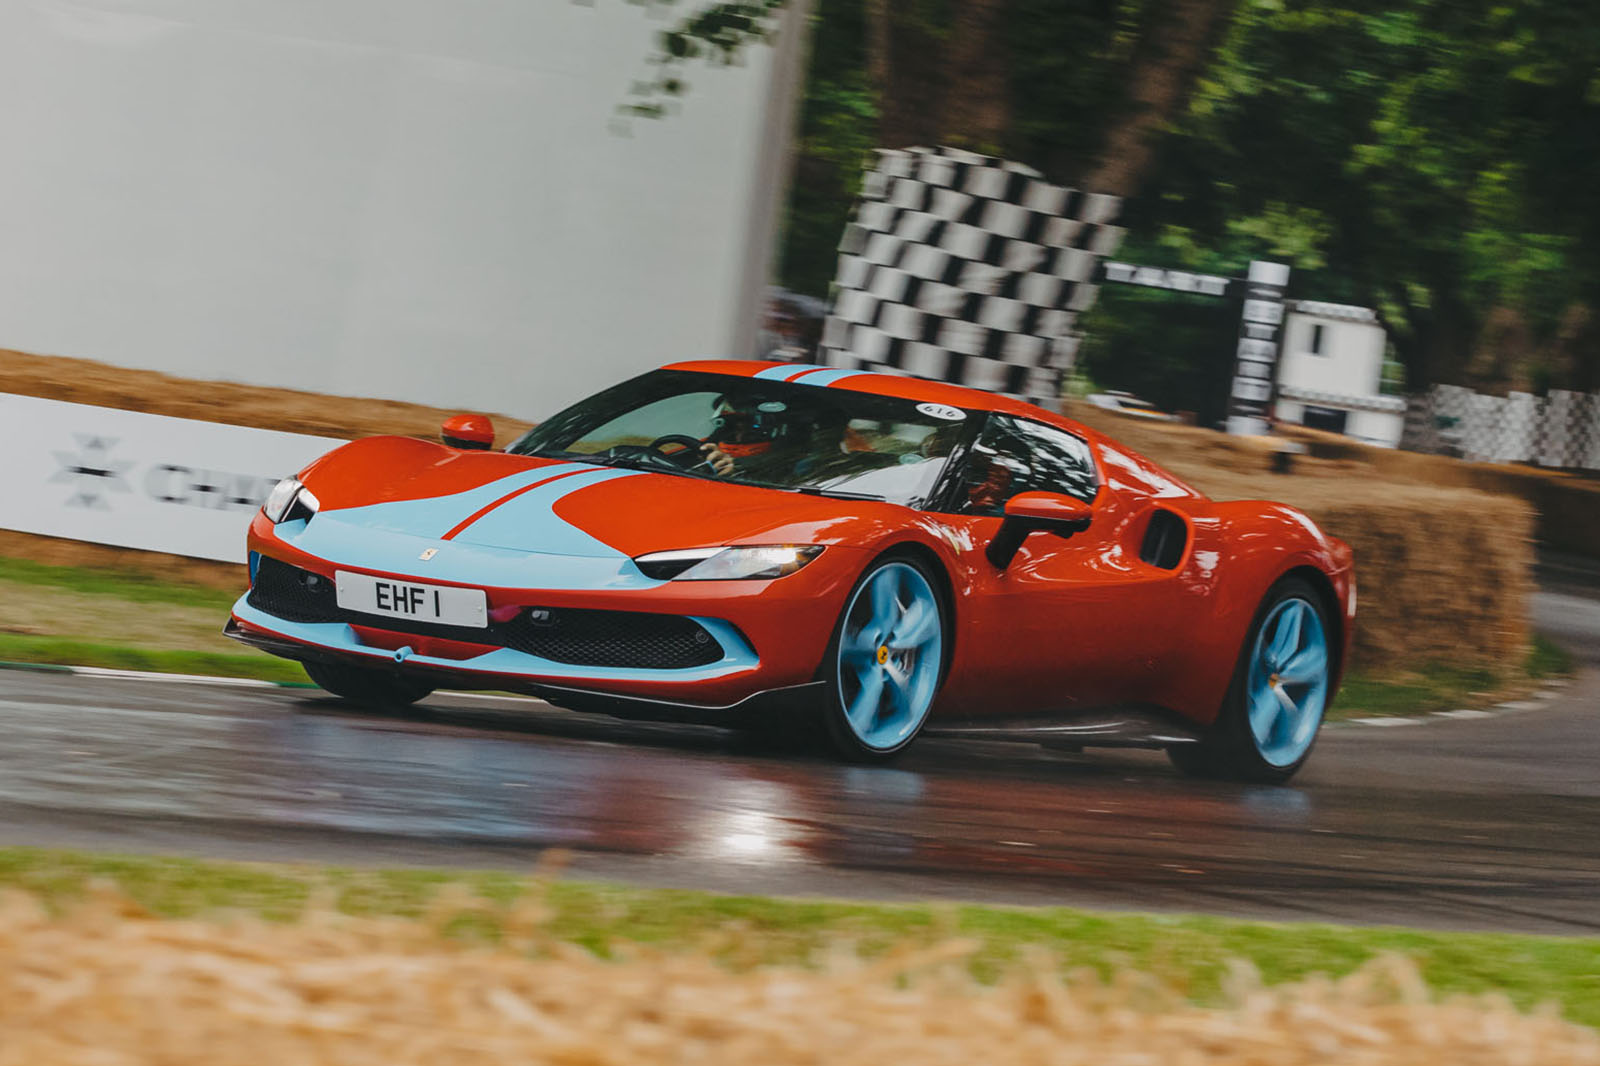 2022 Ferrari 296 GTB video review: International first drive - Drive